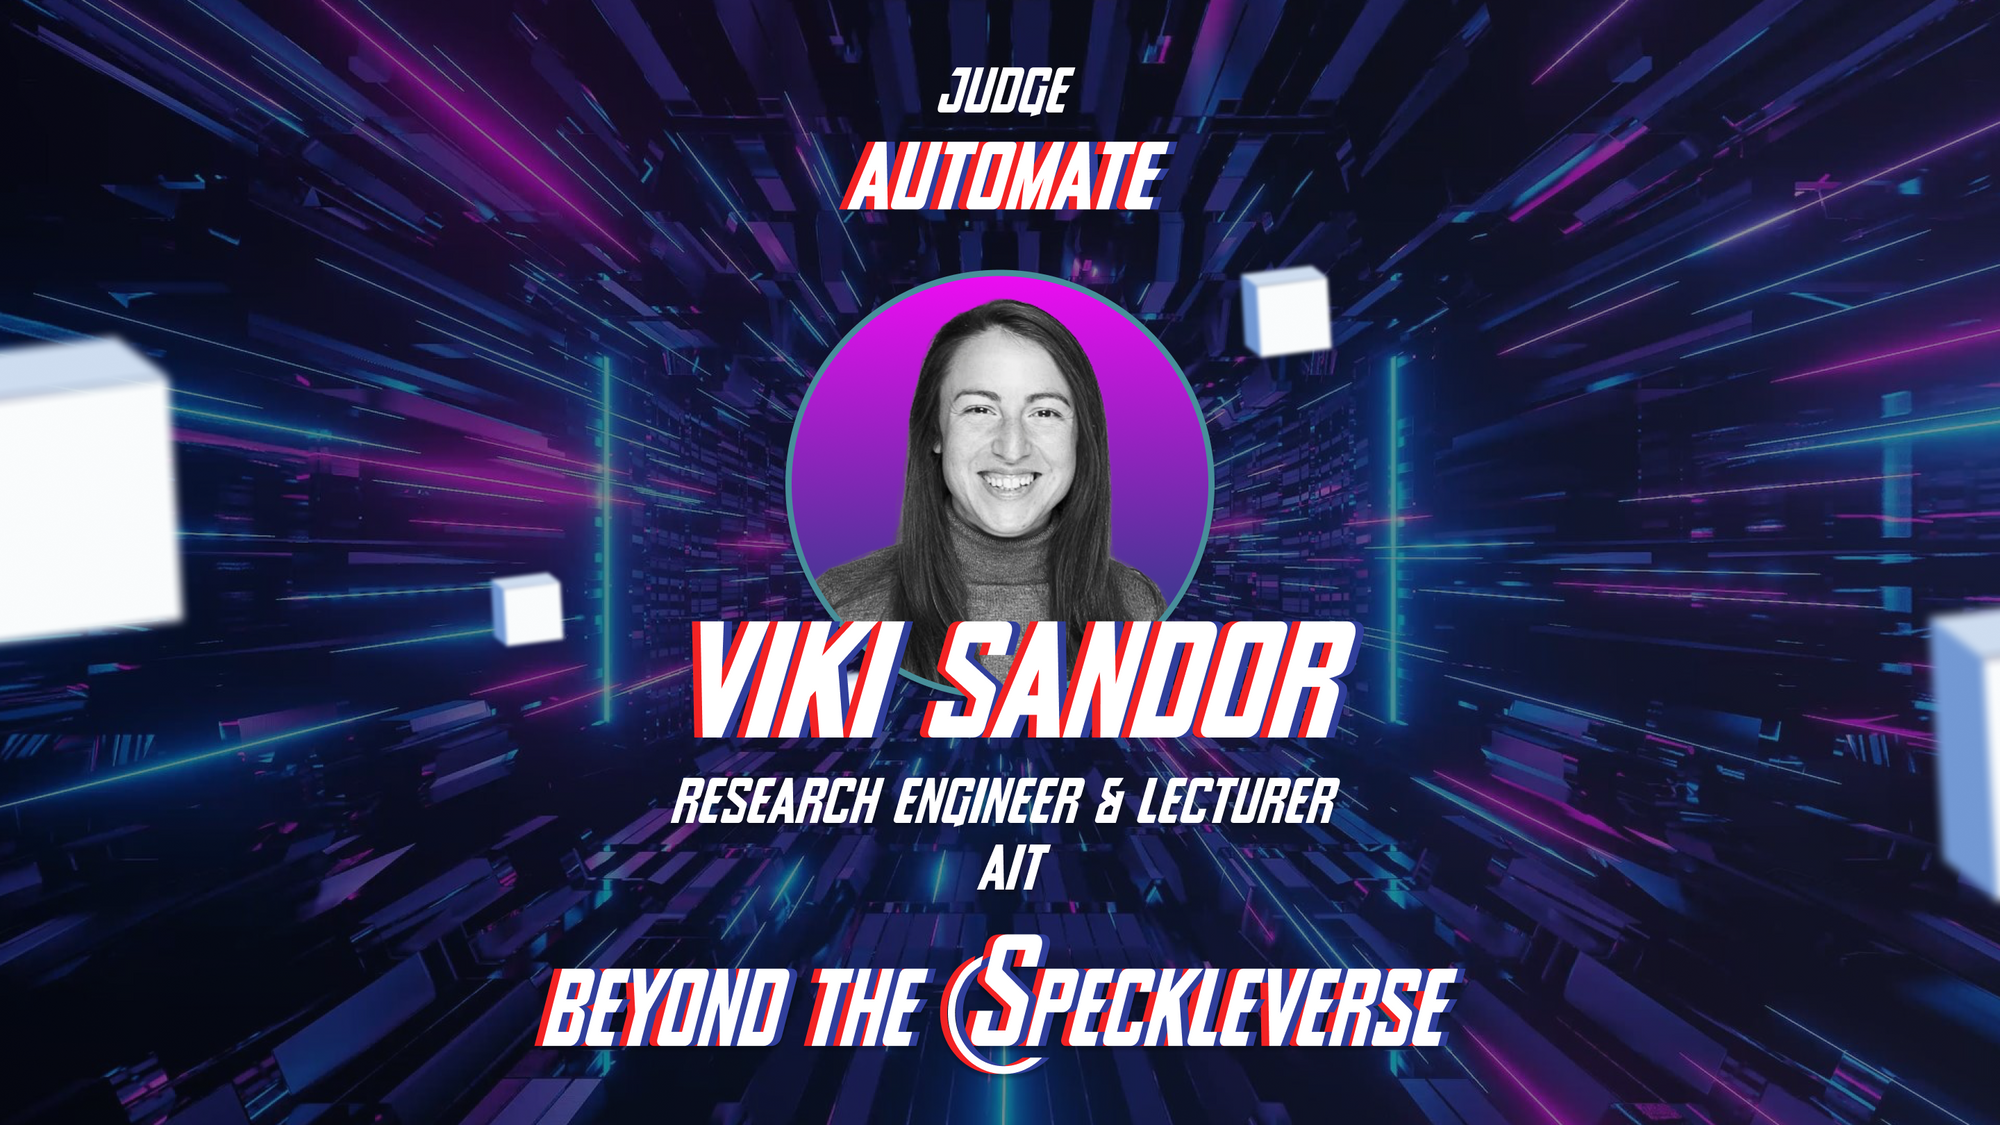 Meet the Automate Judge: Viki Sandor